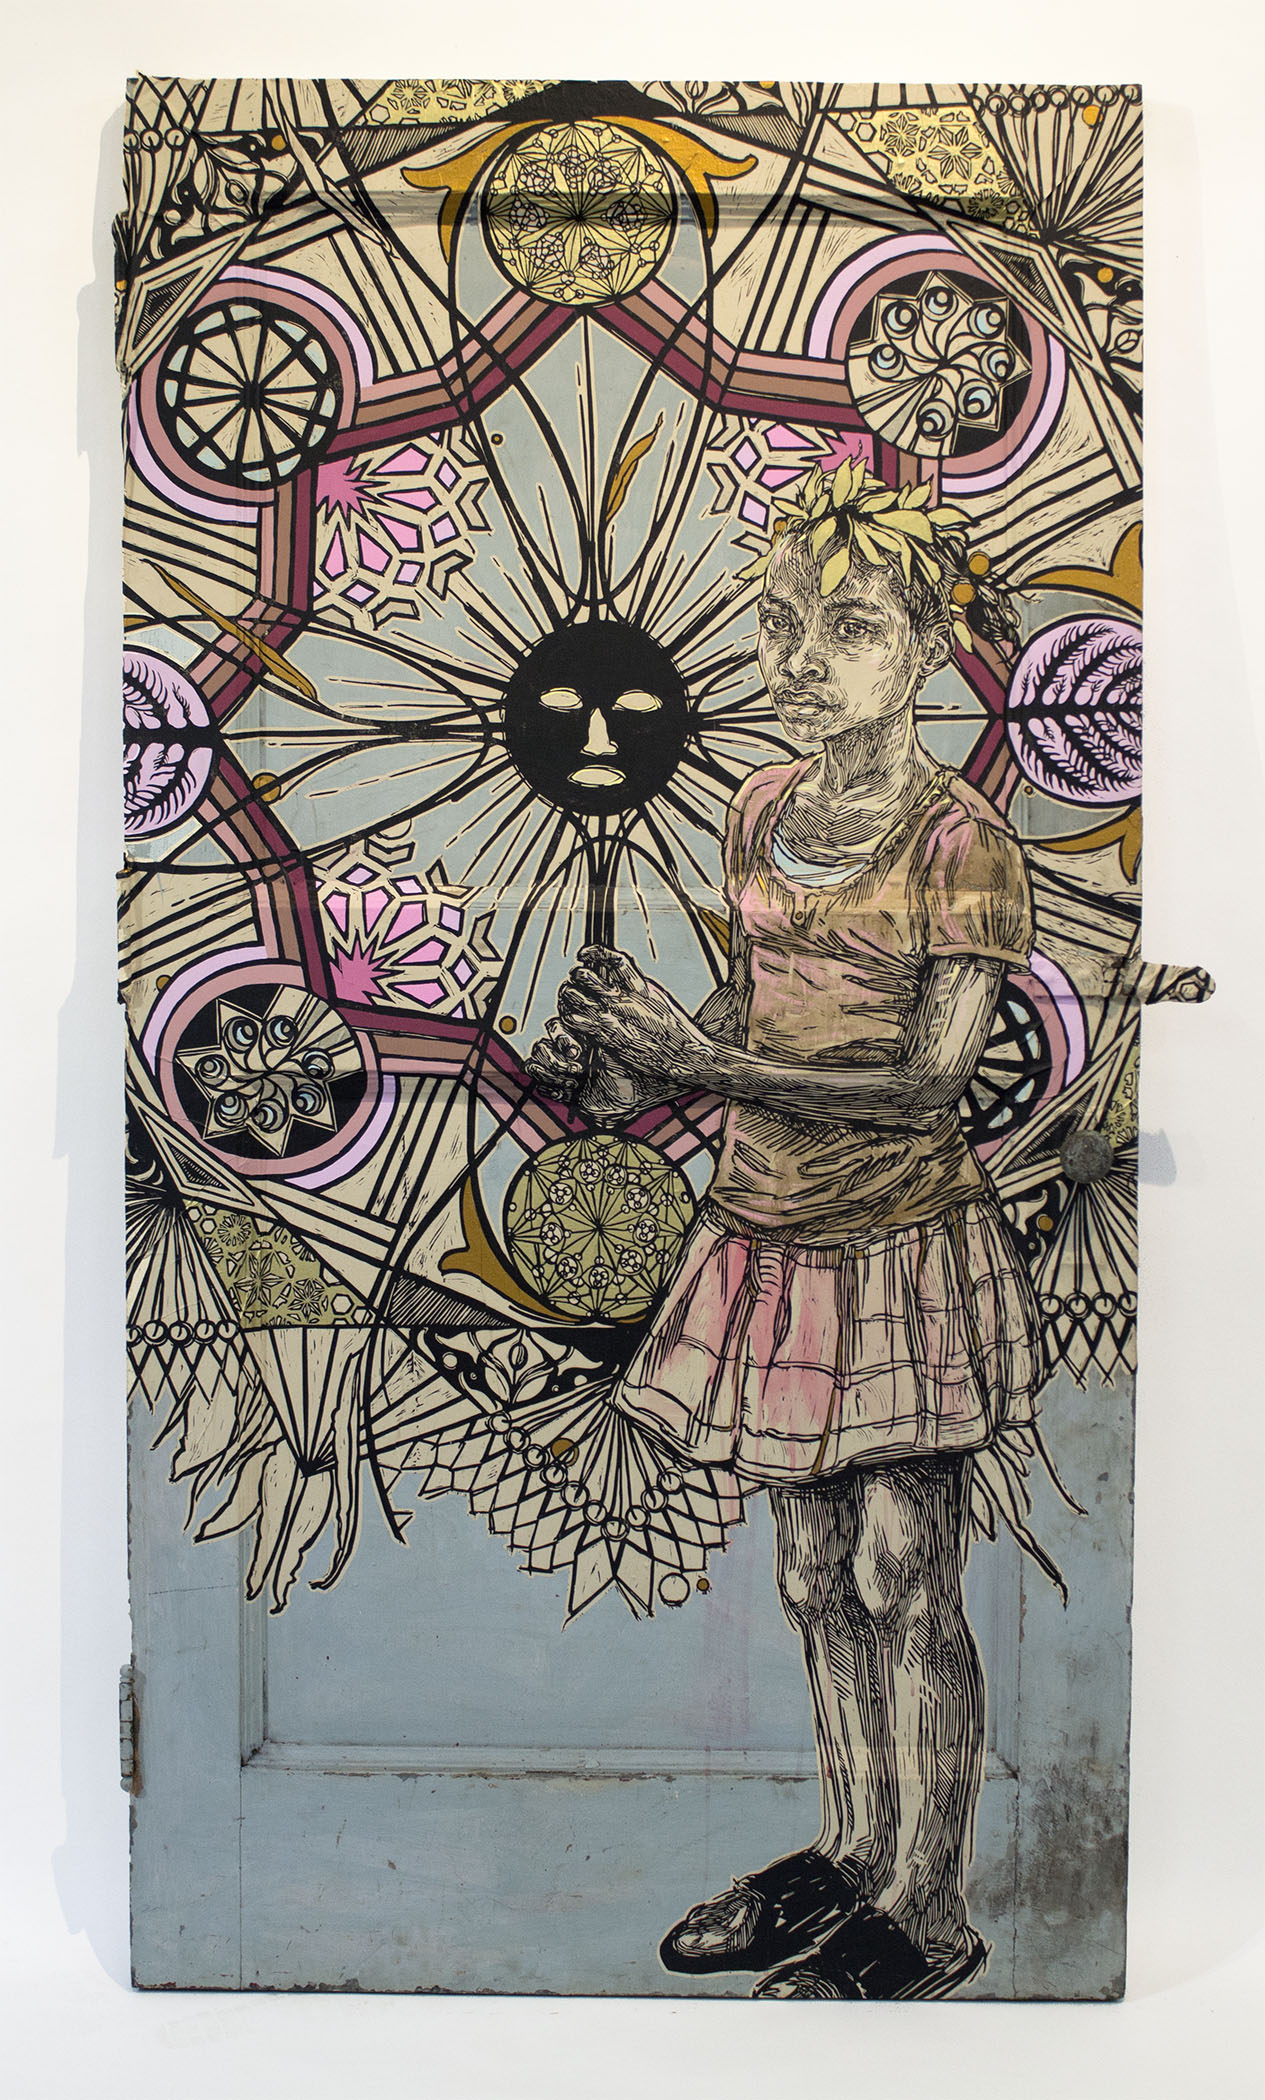  Swoon, "Edline." 2015. Block print on paper on metal door. 44 x 83 x 2.5 in. 